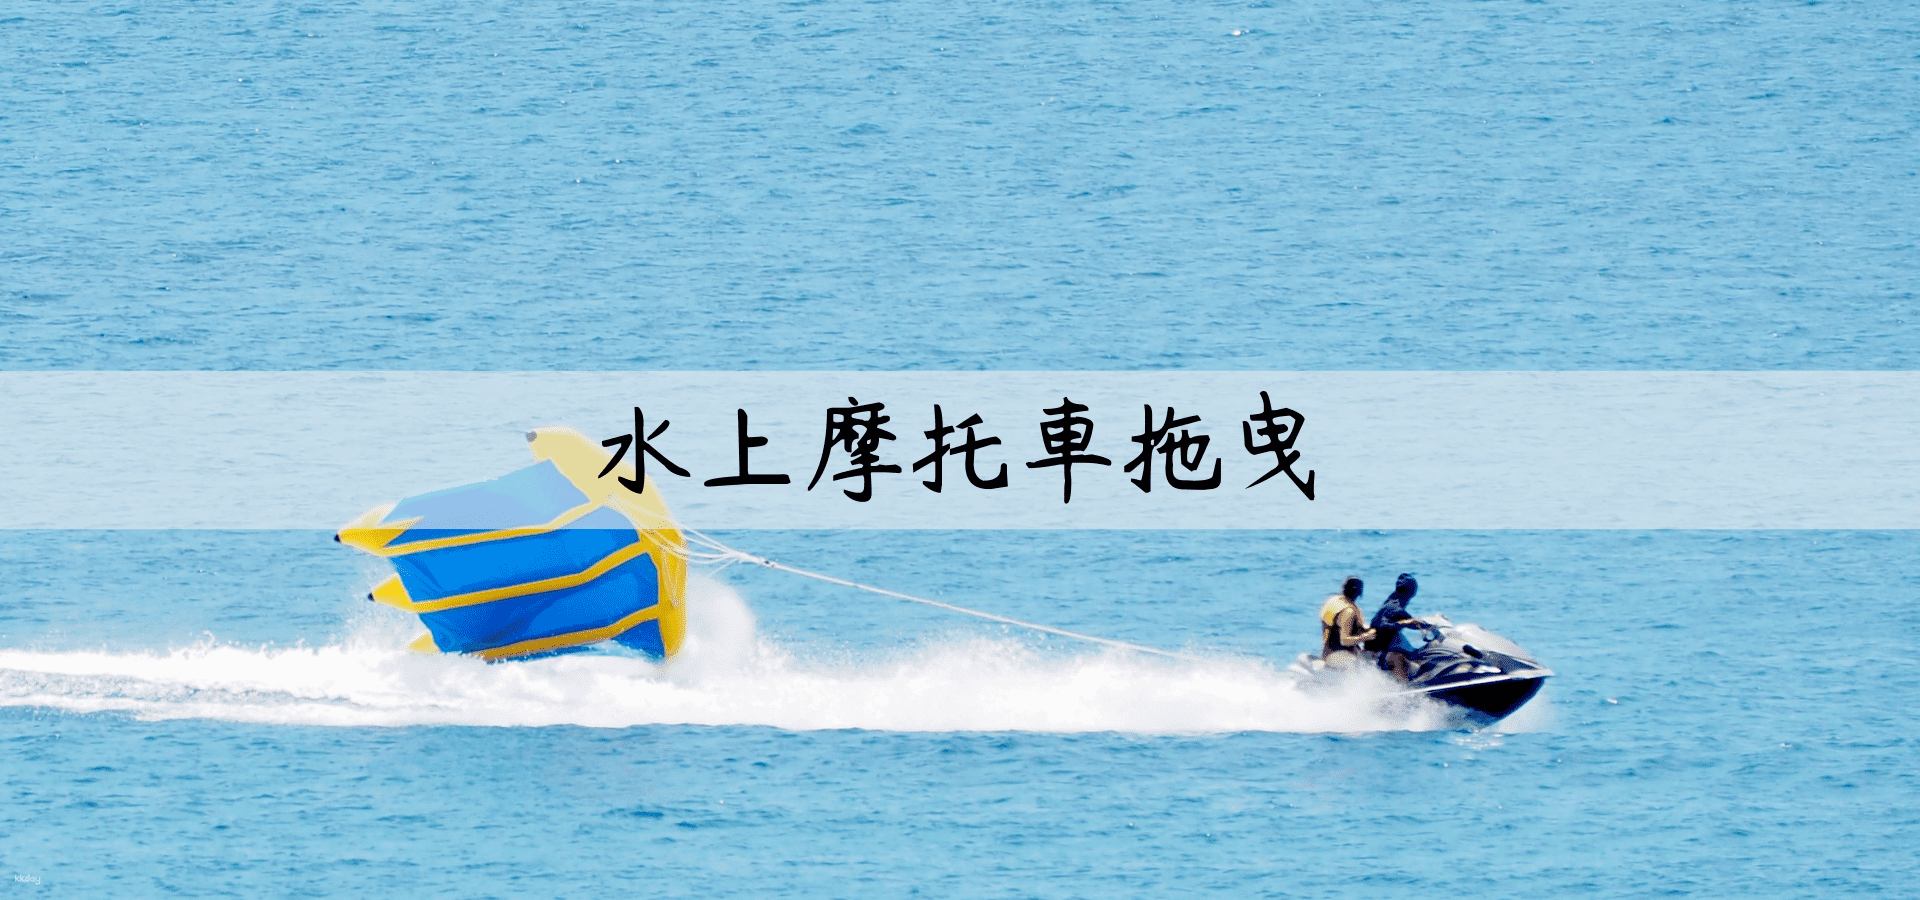 澎湖-澳昇海洋俱樂部| 嵵裡沙灘水上摩托車拖曳